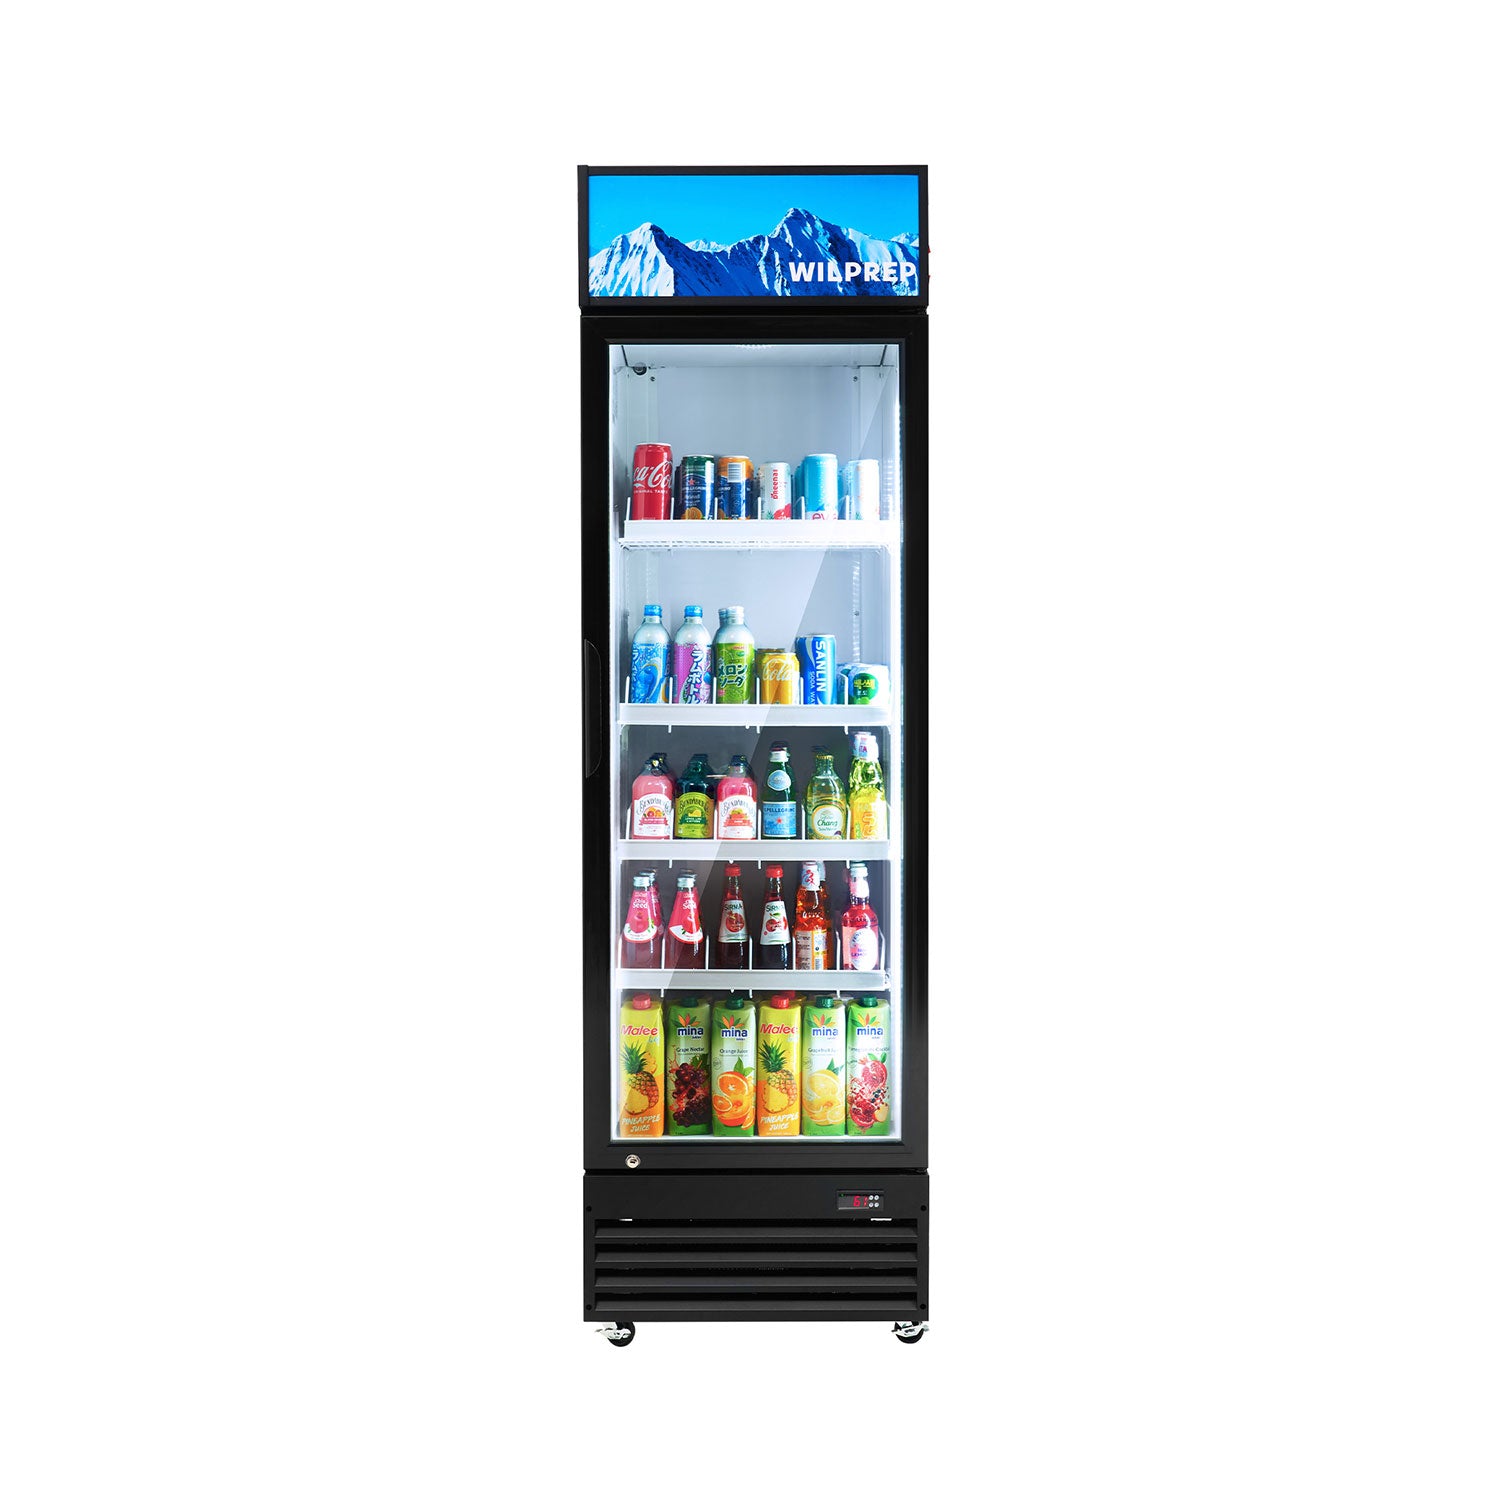 Wilprep 22.8 inch single door commercial refrigerator